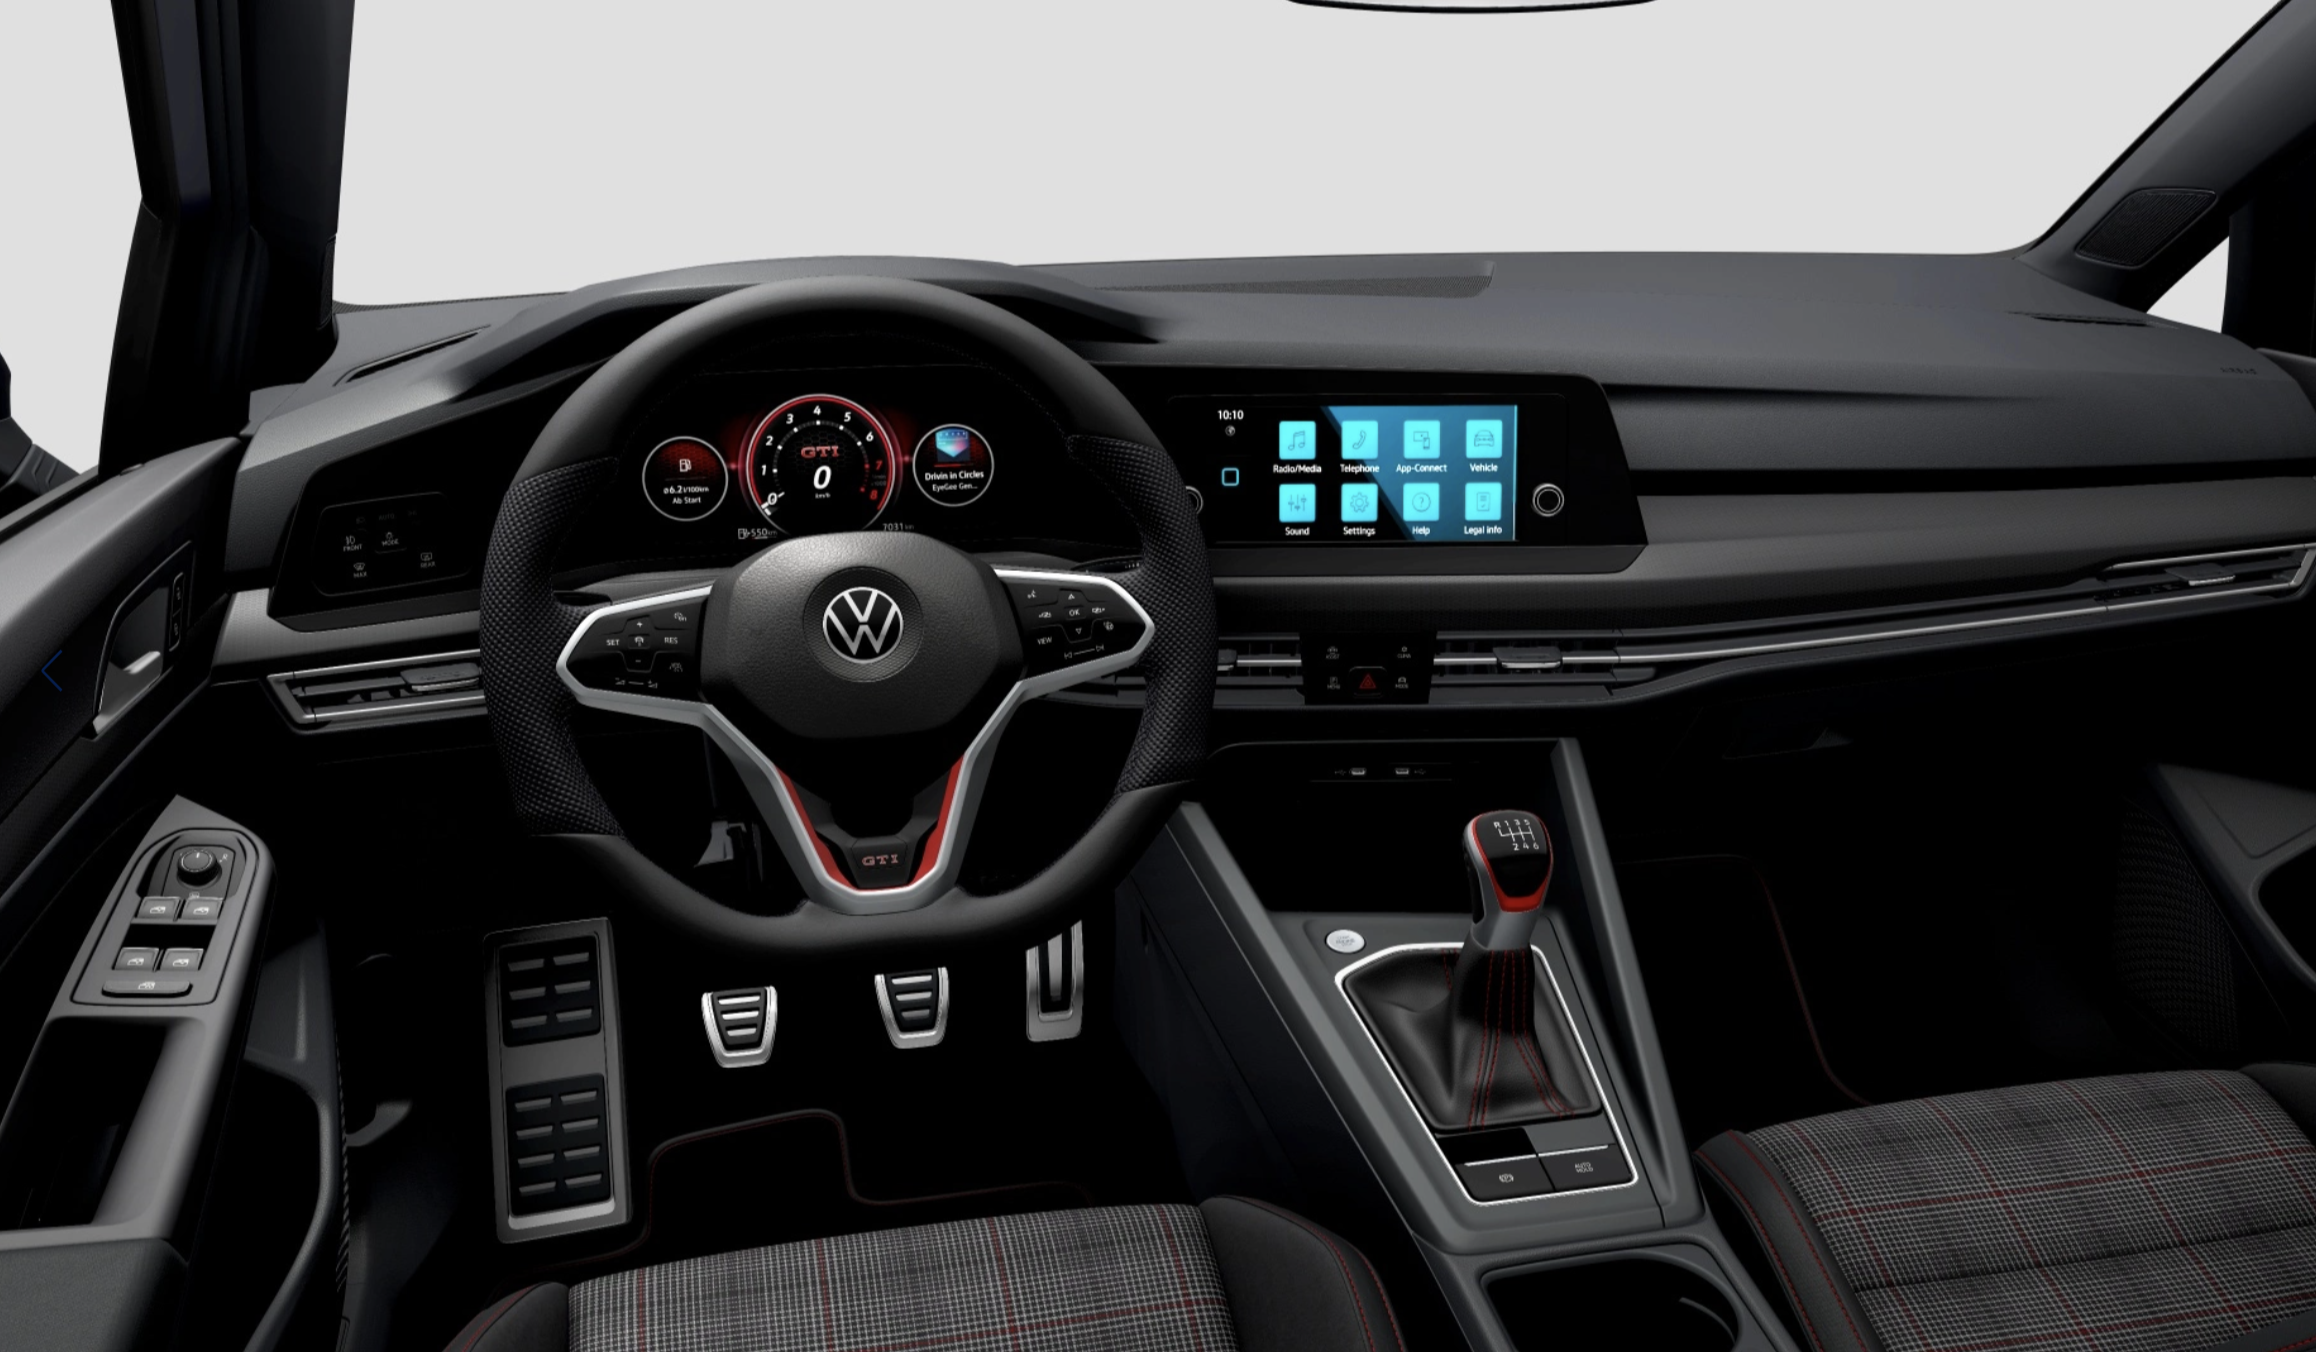 2014 Volkswagen Golf Wagon Review | Practical Motoring